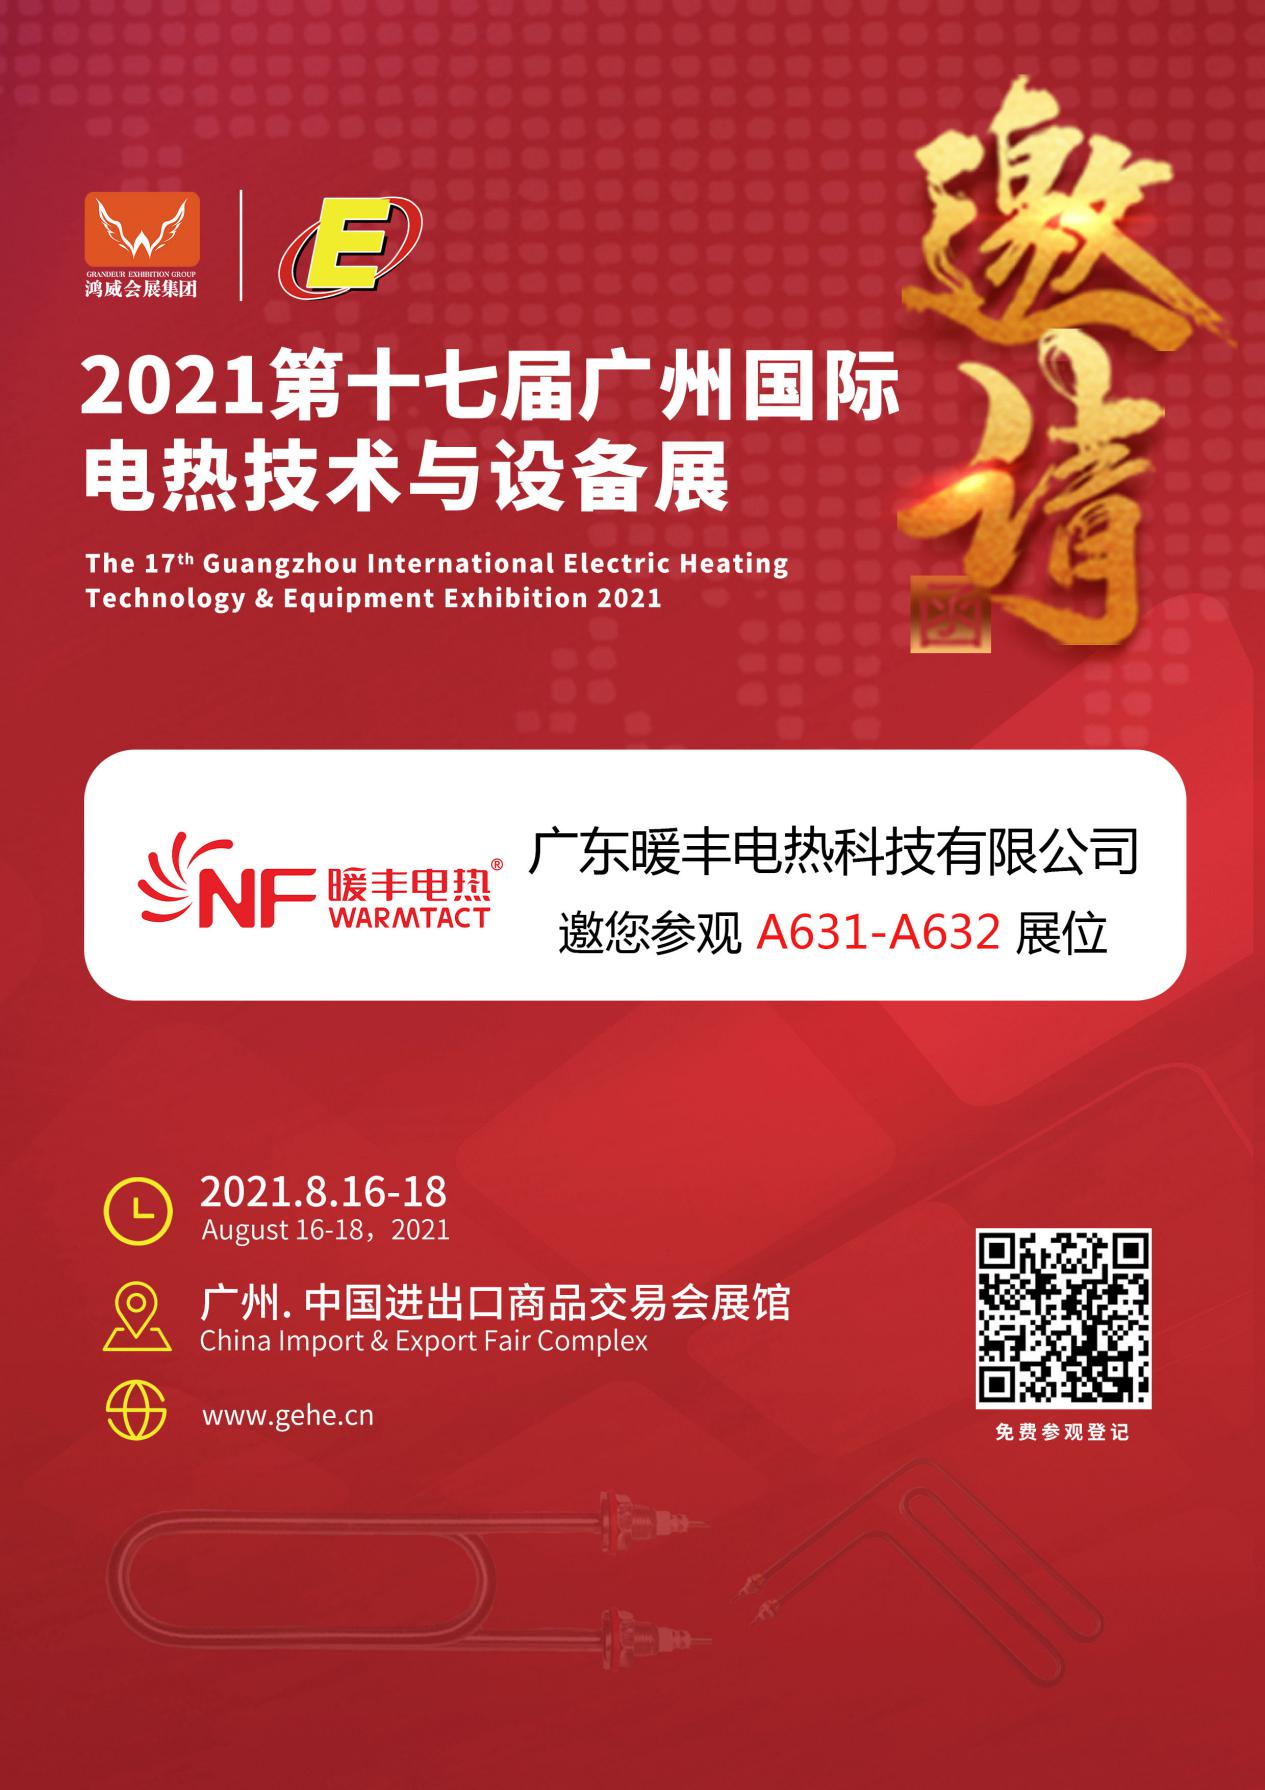 暖丰电热诚邀您参与2021第十七届广州国际电热技术与设备展